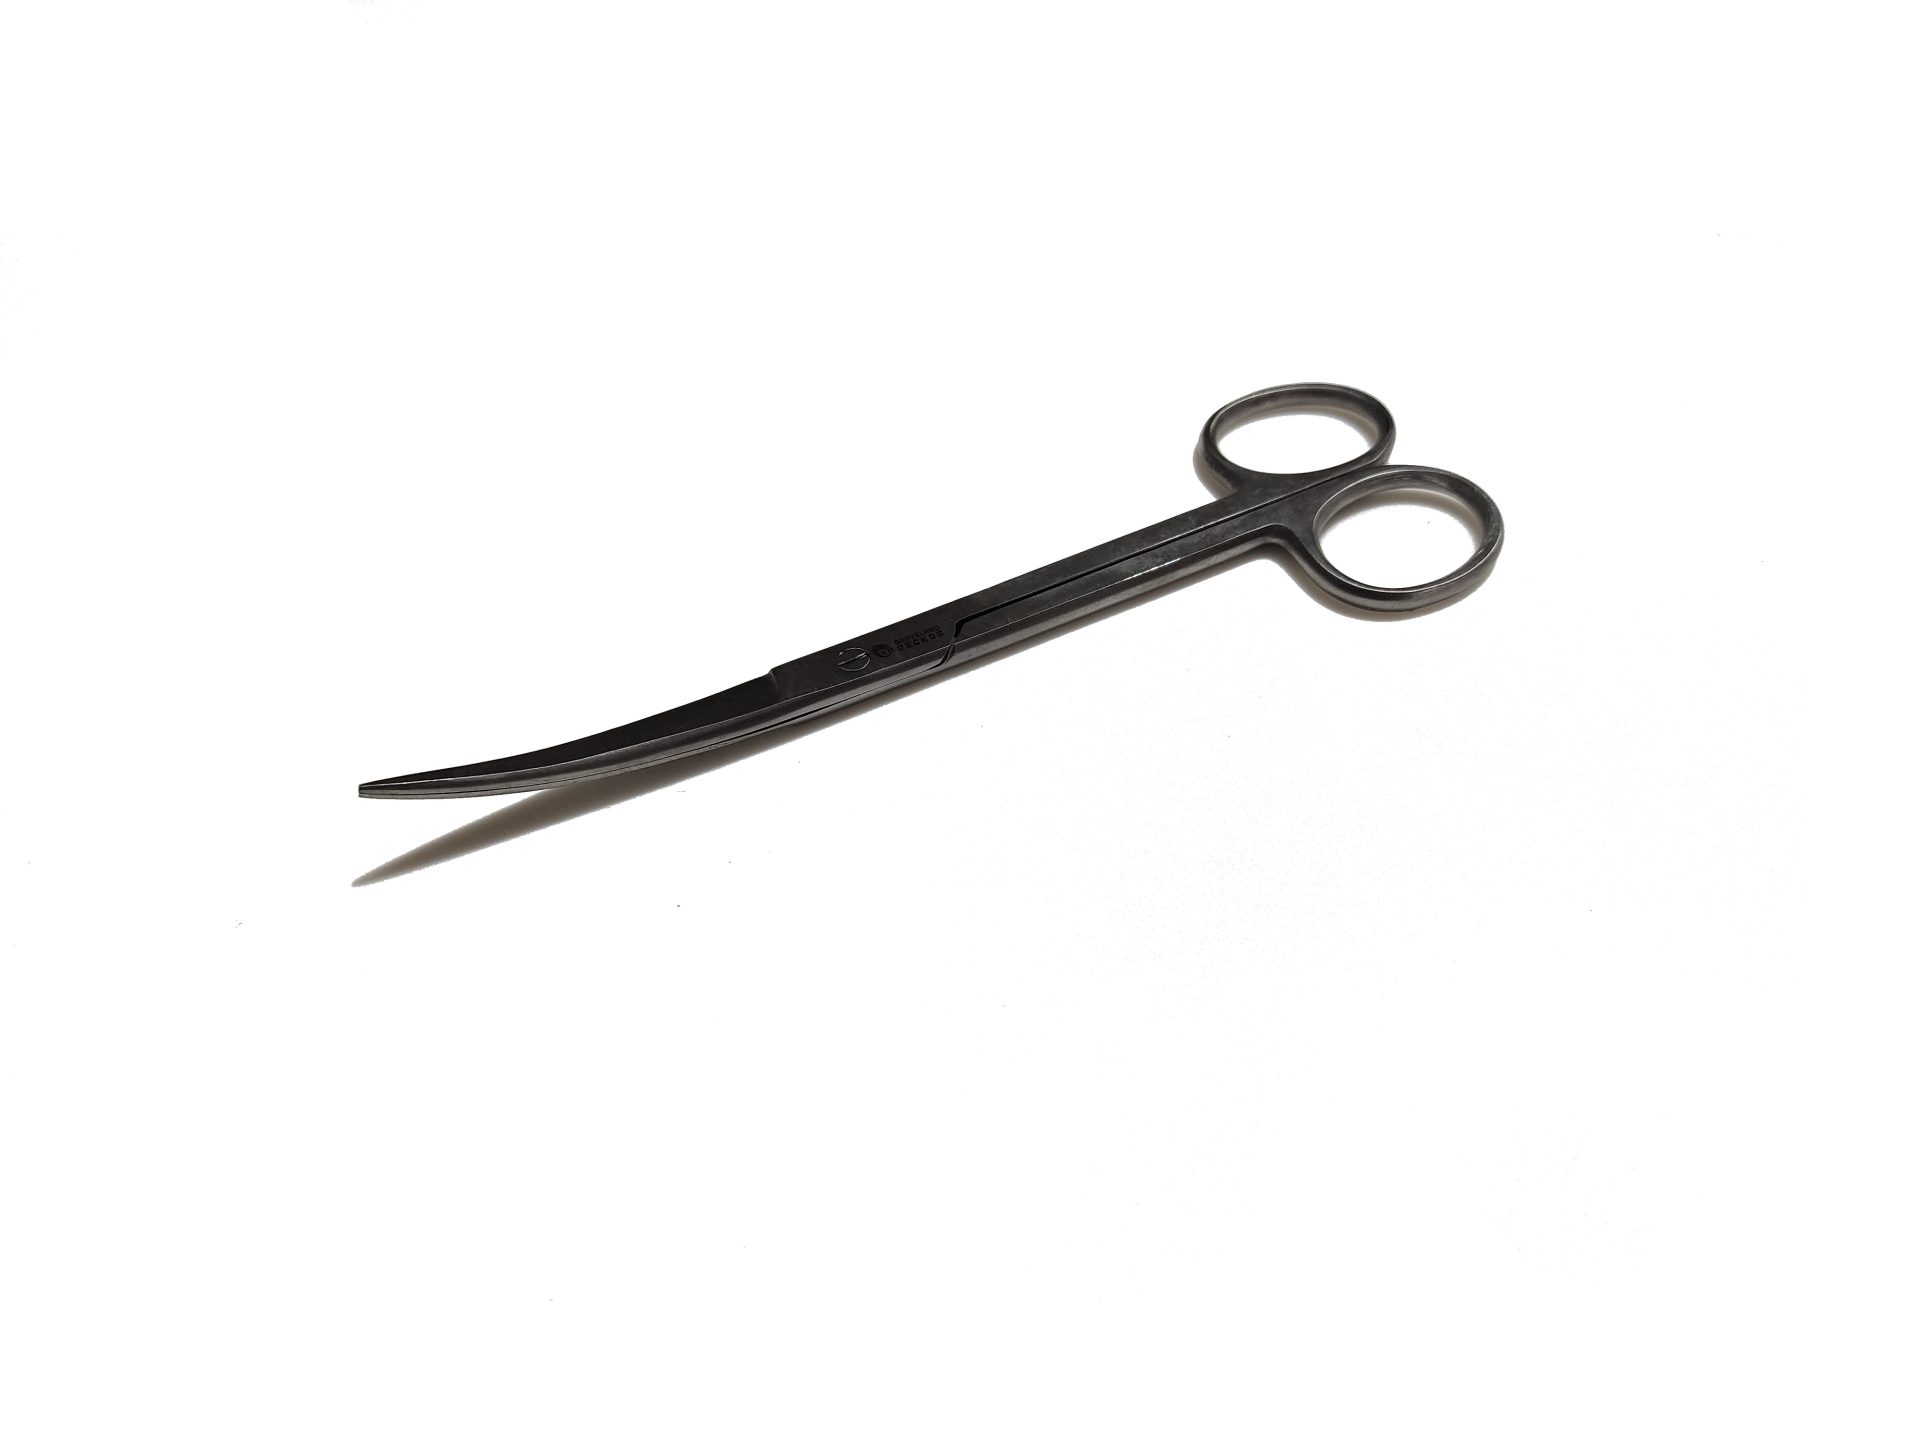 Pro- Trim Scissors 7in curved